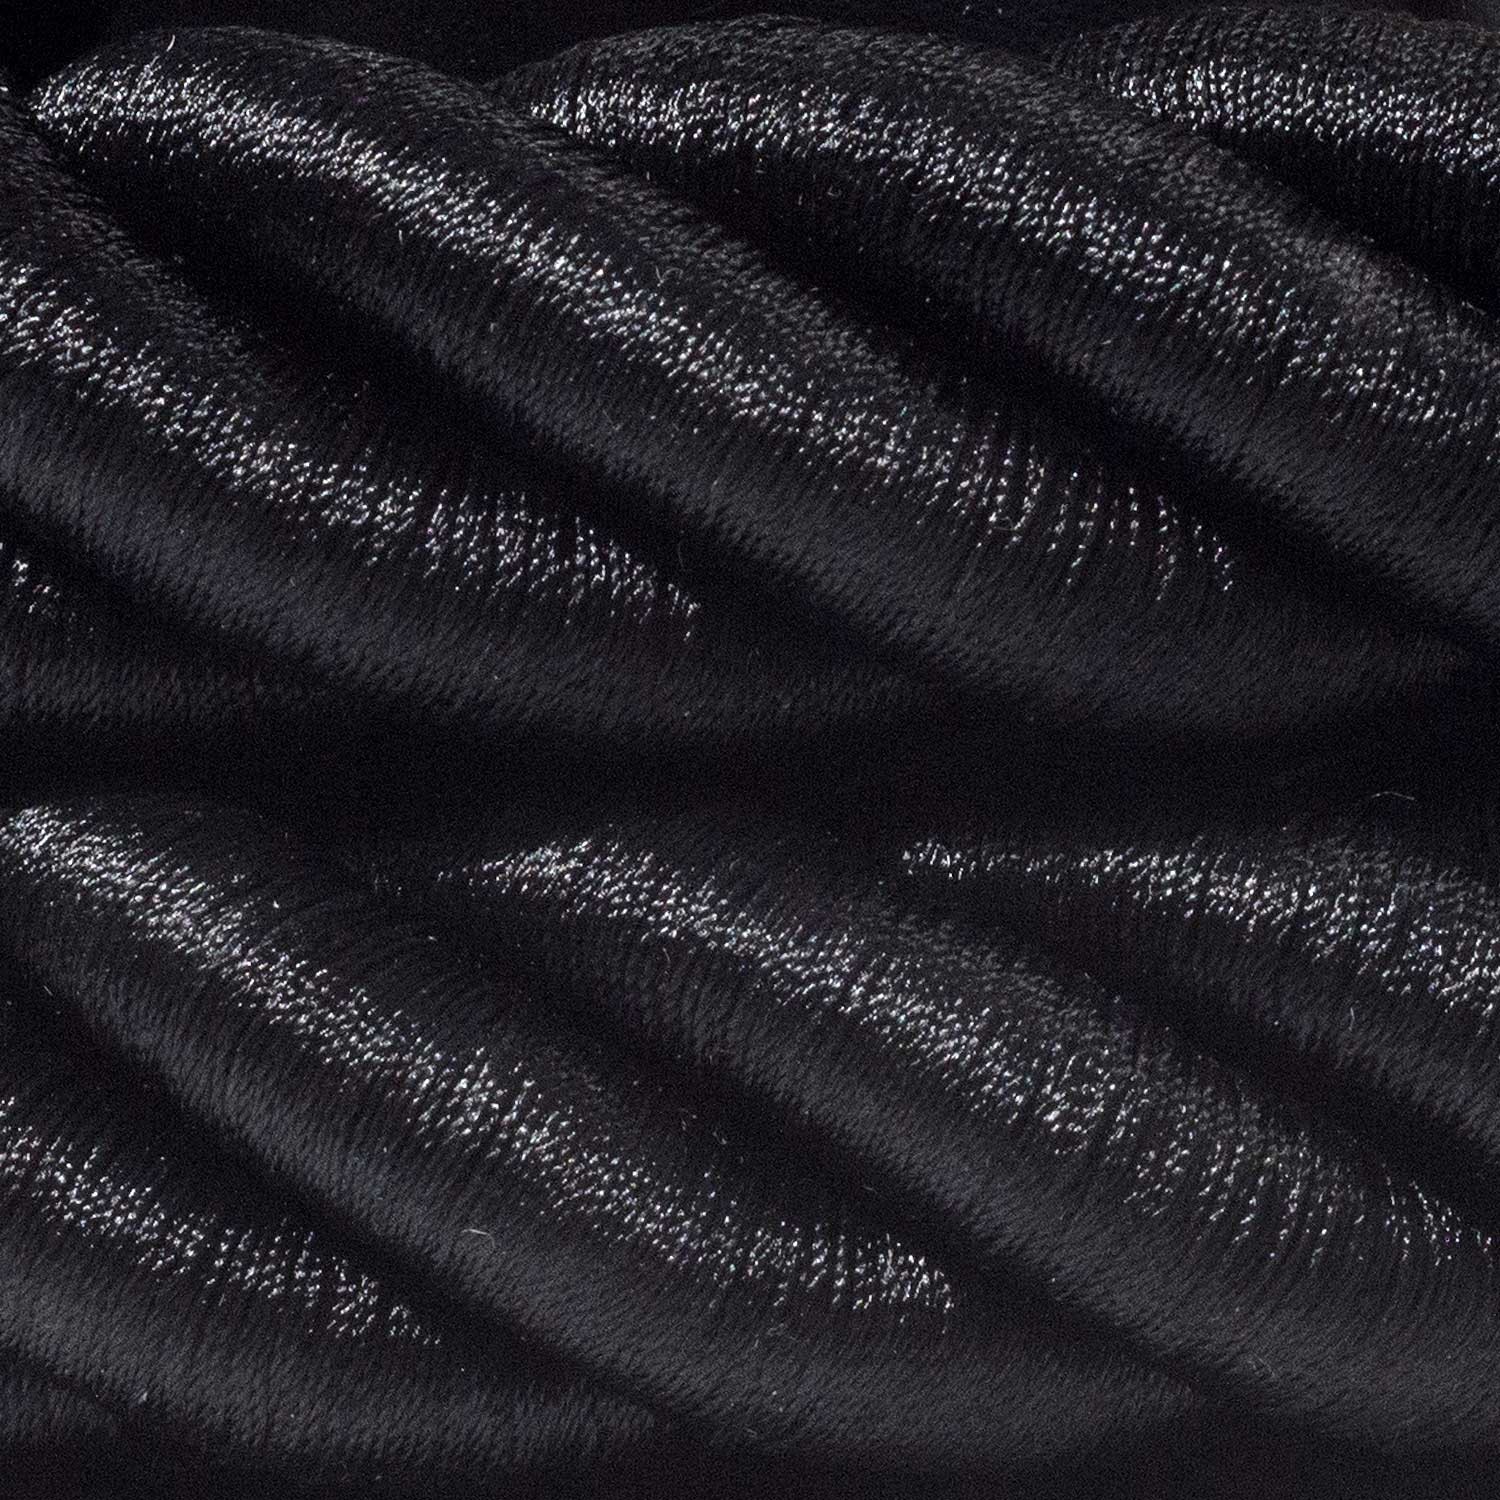 Electrische 3XL touwkabel, 3 x 0,75 mm. Binnenkabels bedekt met zwart textiel. Diameter 30 mm.